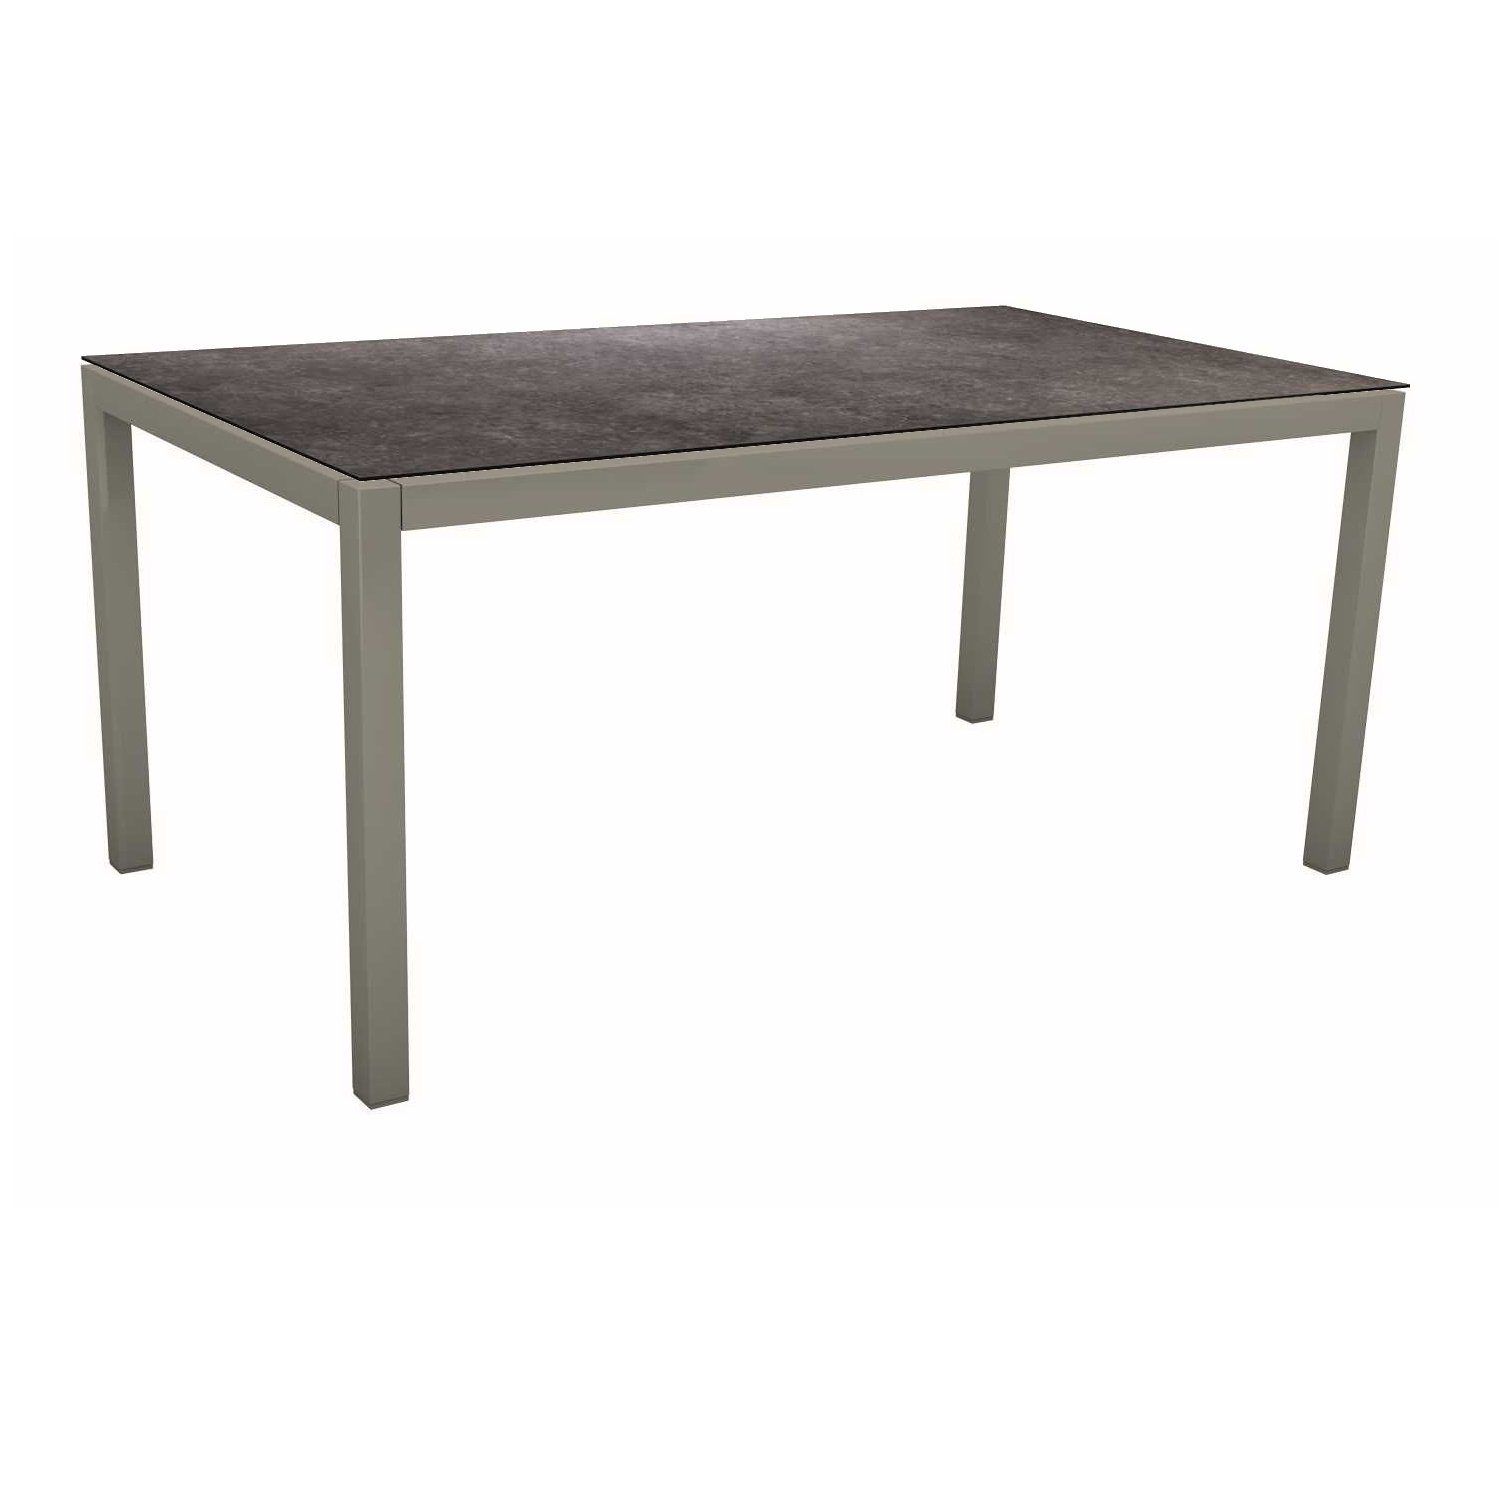 Stern Tischsystem, Gestell Aluminium graphit, Tischplatte HPL Vintage grau, 160x90 cm